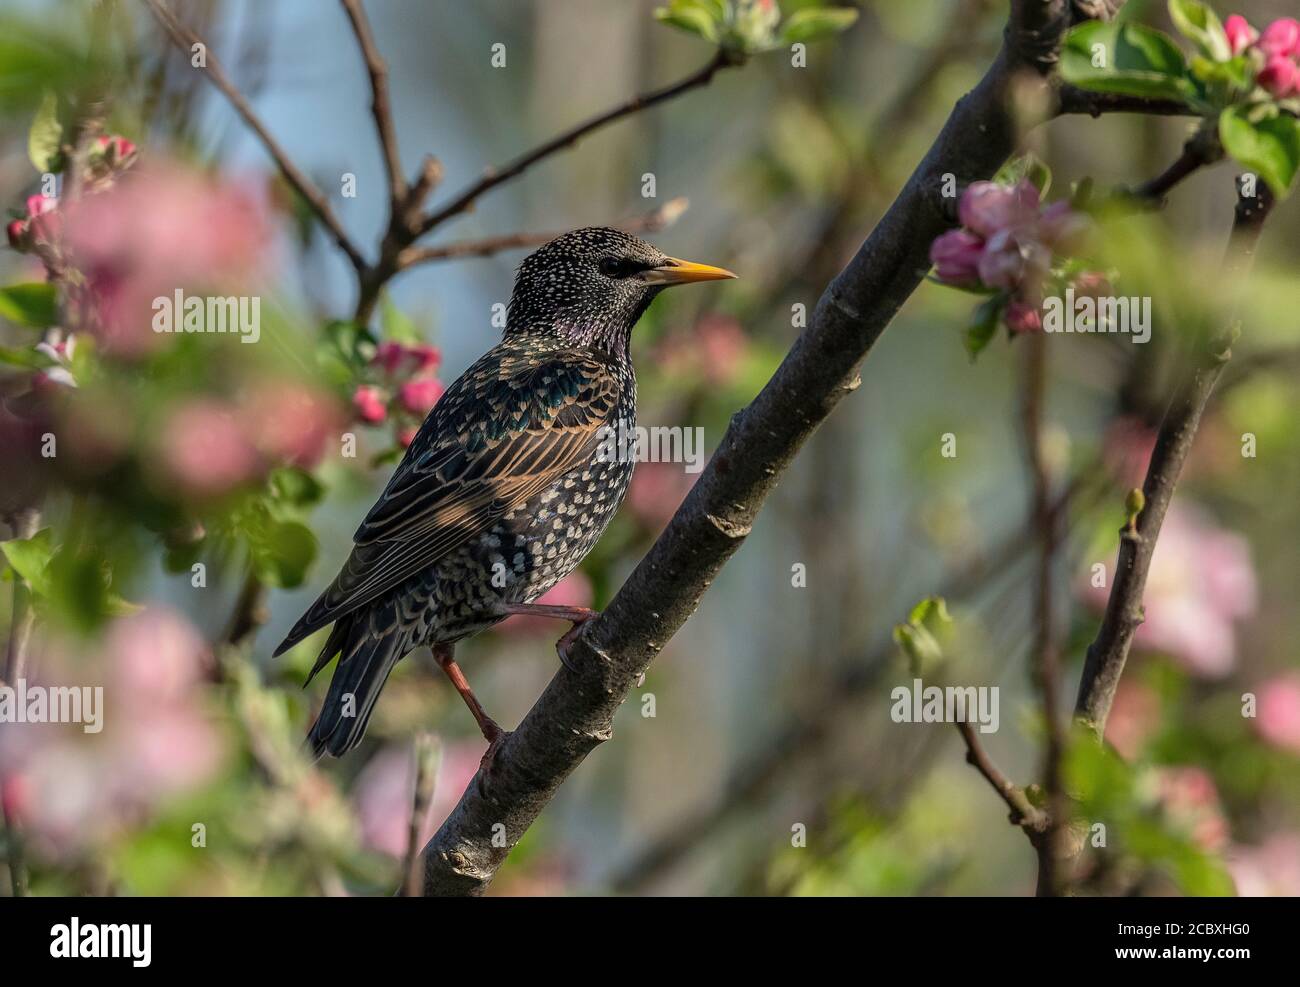 Adult Starling, Sturnus vulgaris, in breeding plumage, perched in apple tree. Stock Photo